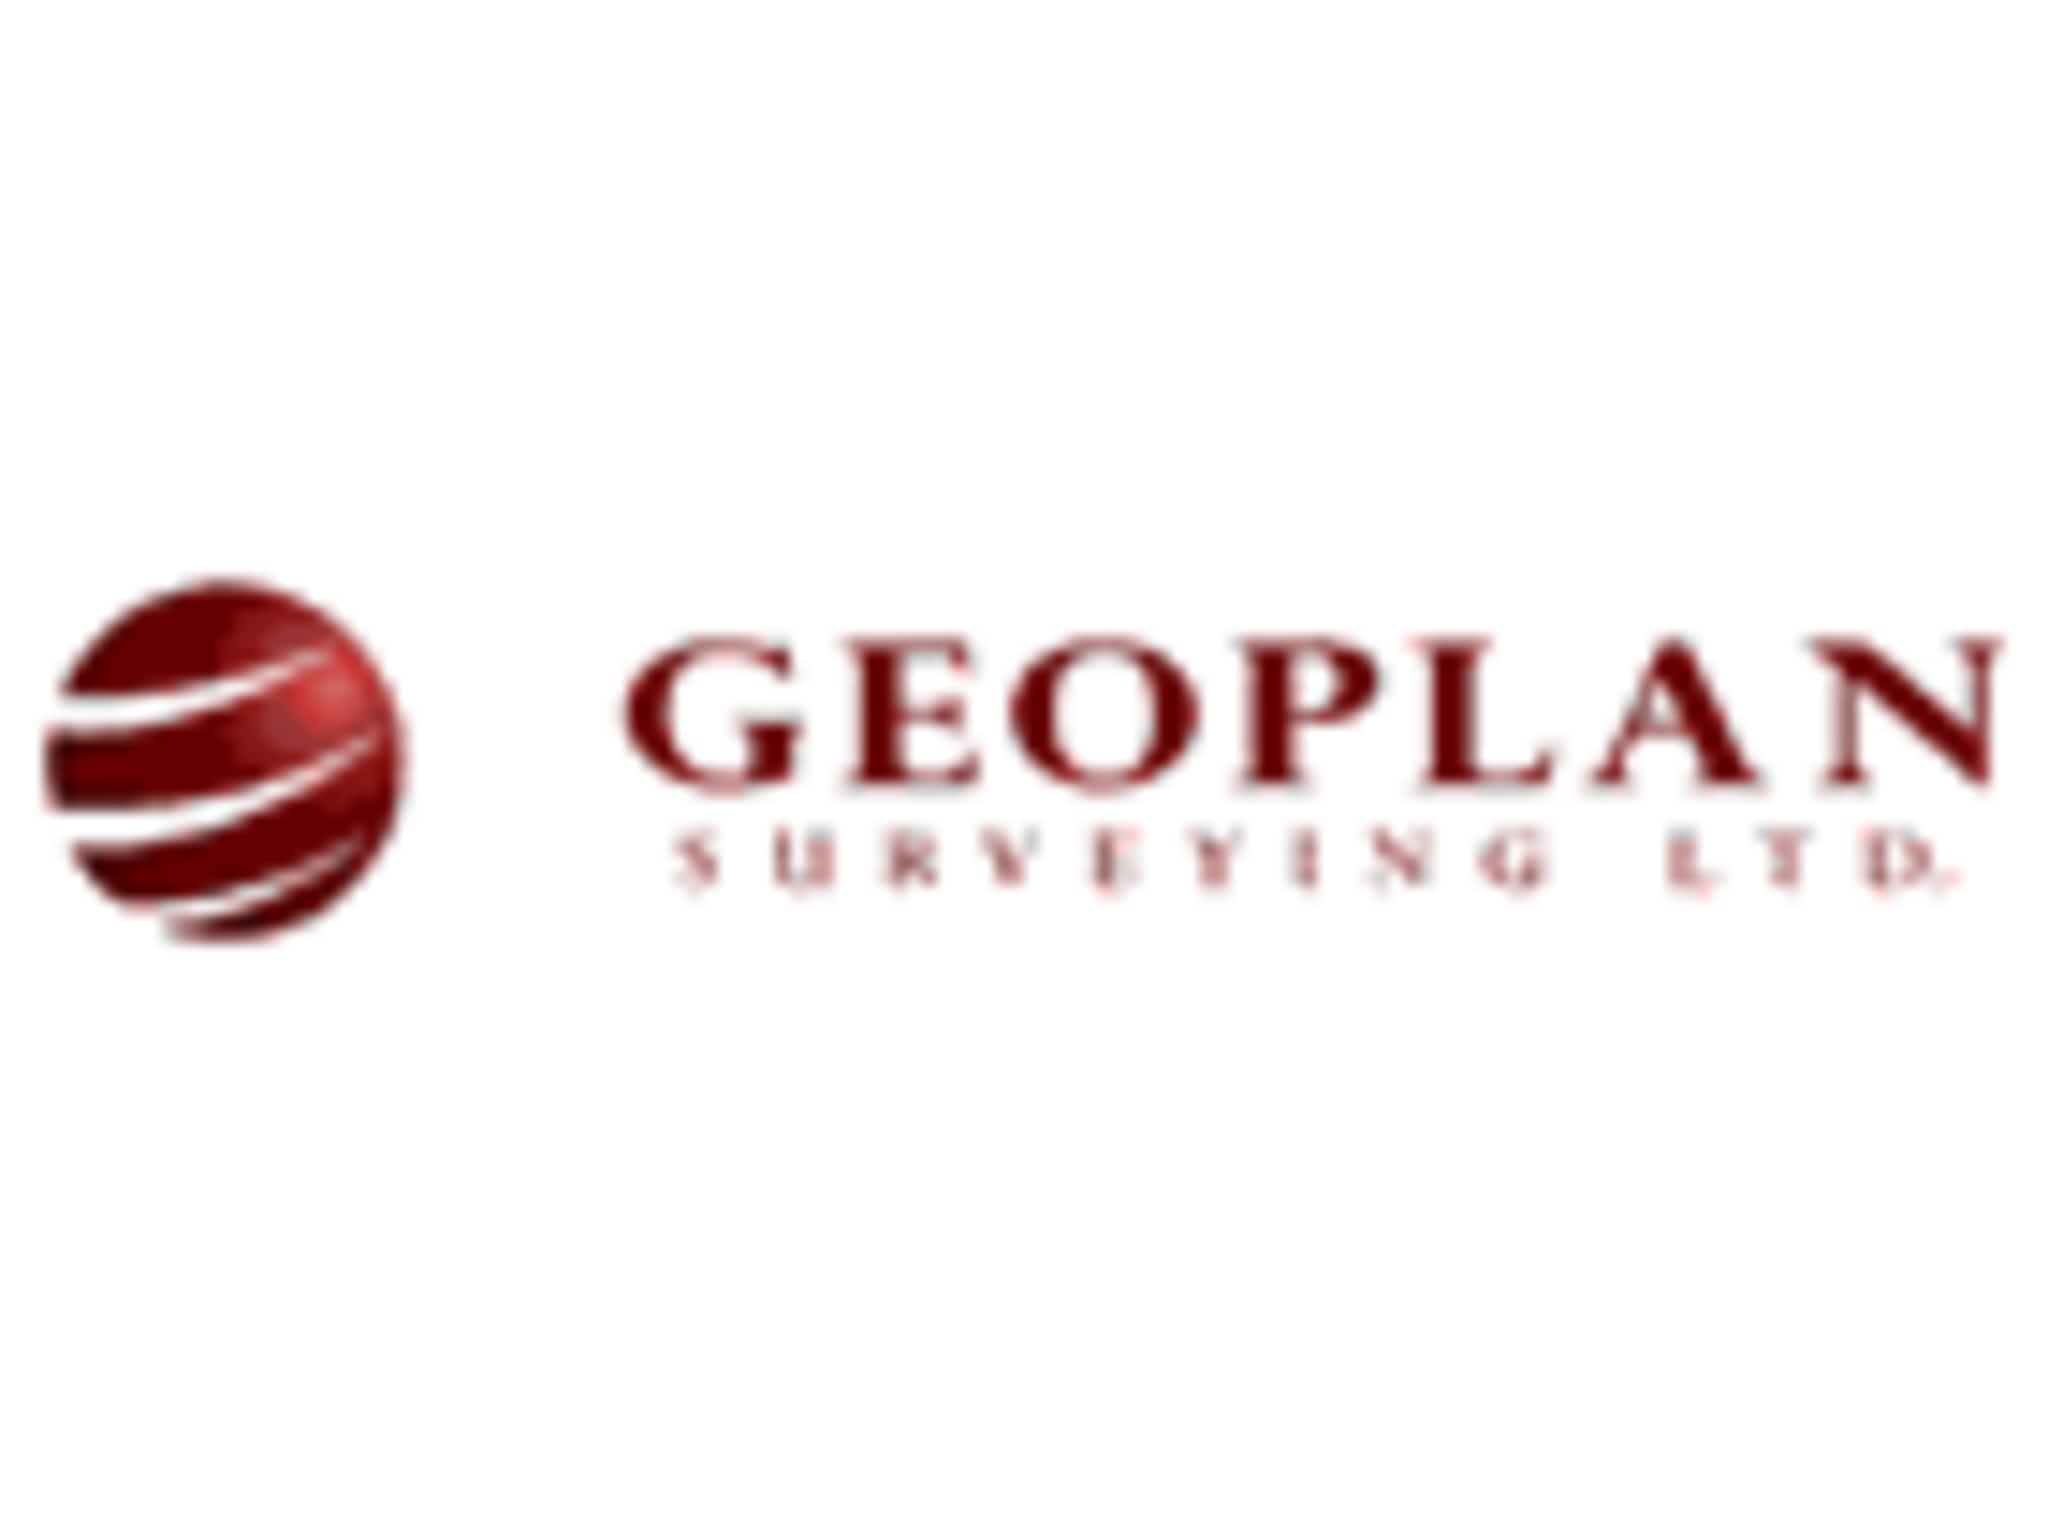 photo Geoplan Surveying Ltd